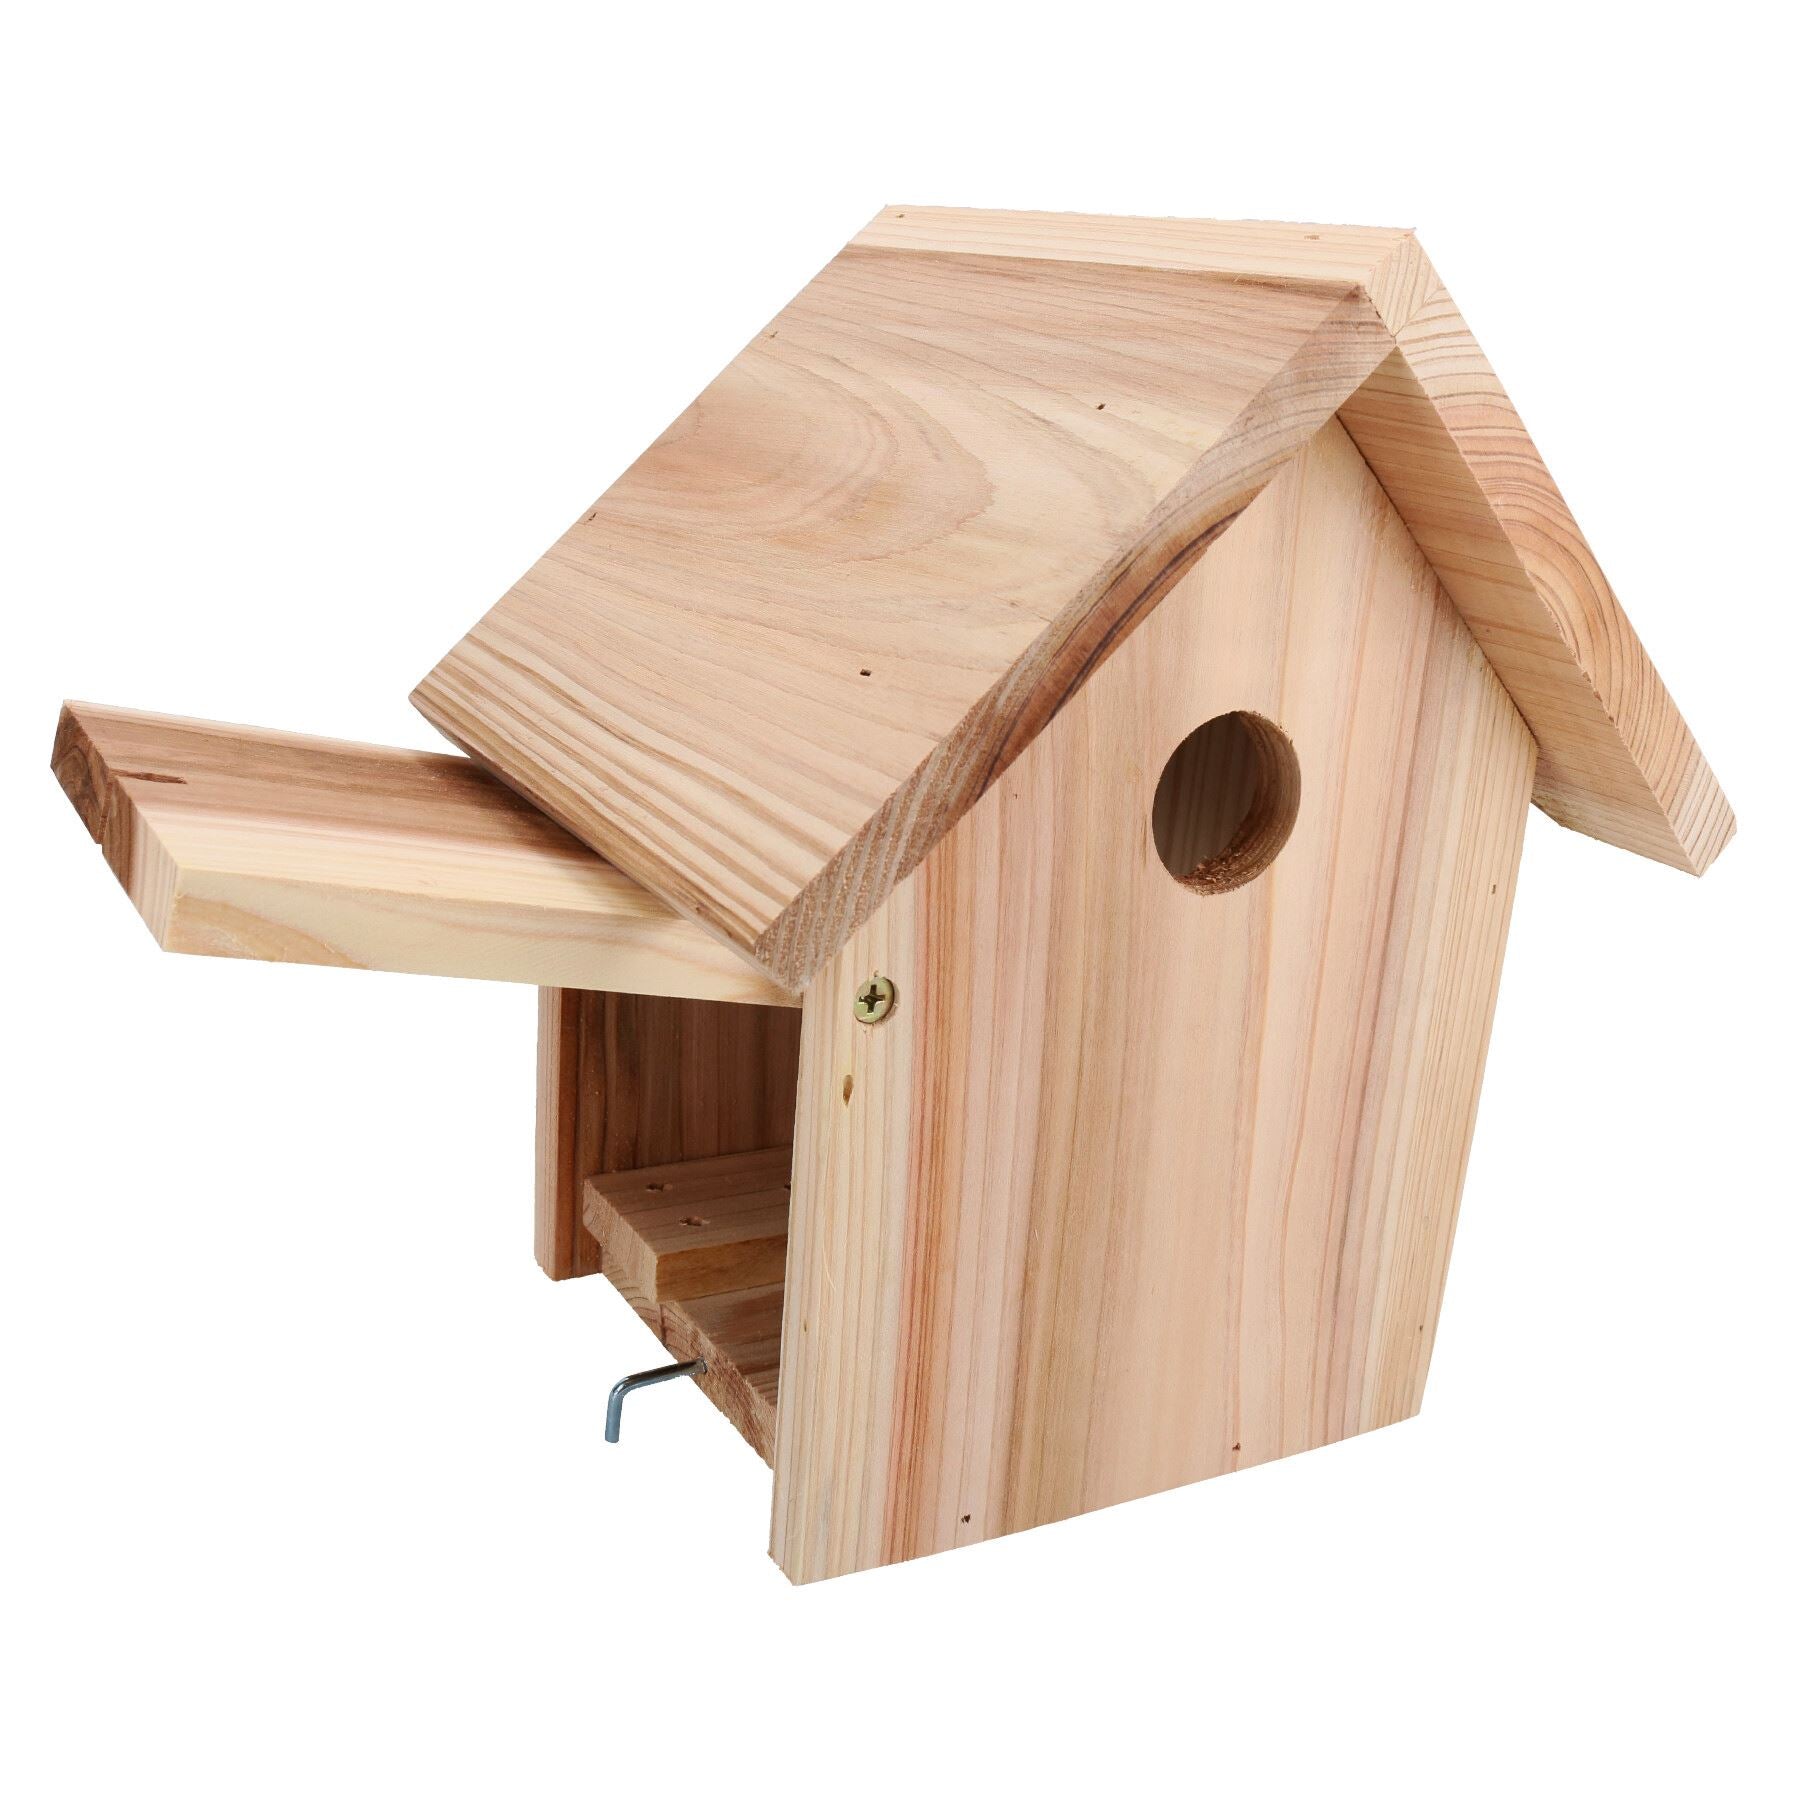 Quality Forest Nature Class Wooden Bird House Garden Nest Box Apex 32mm Hole